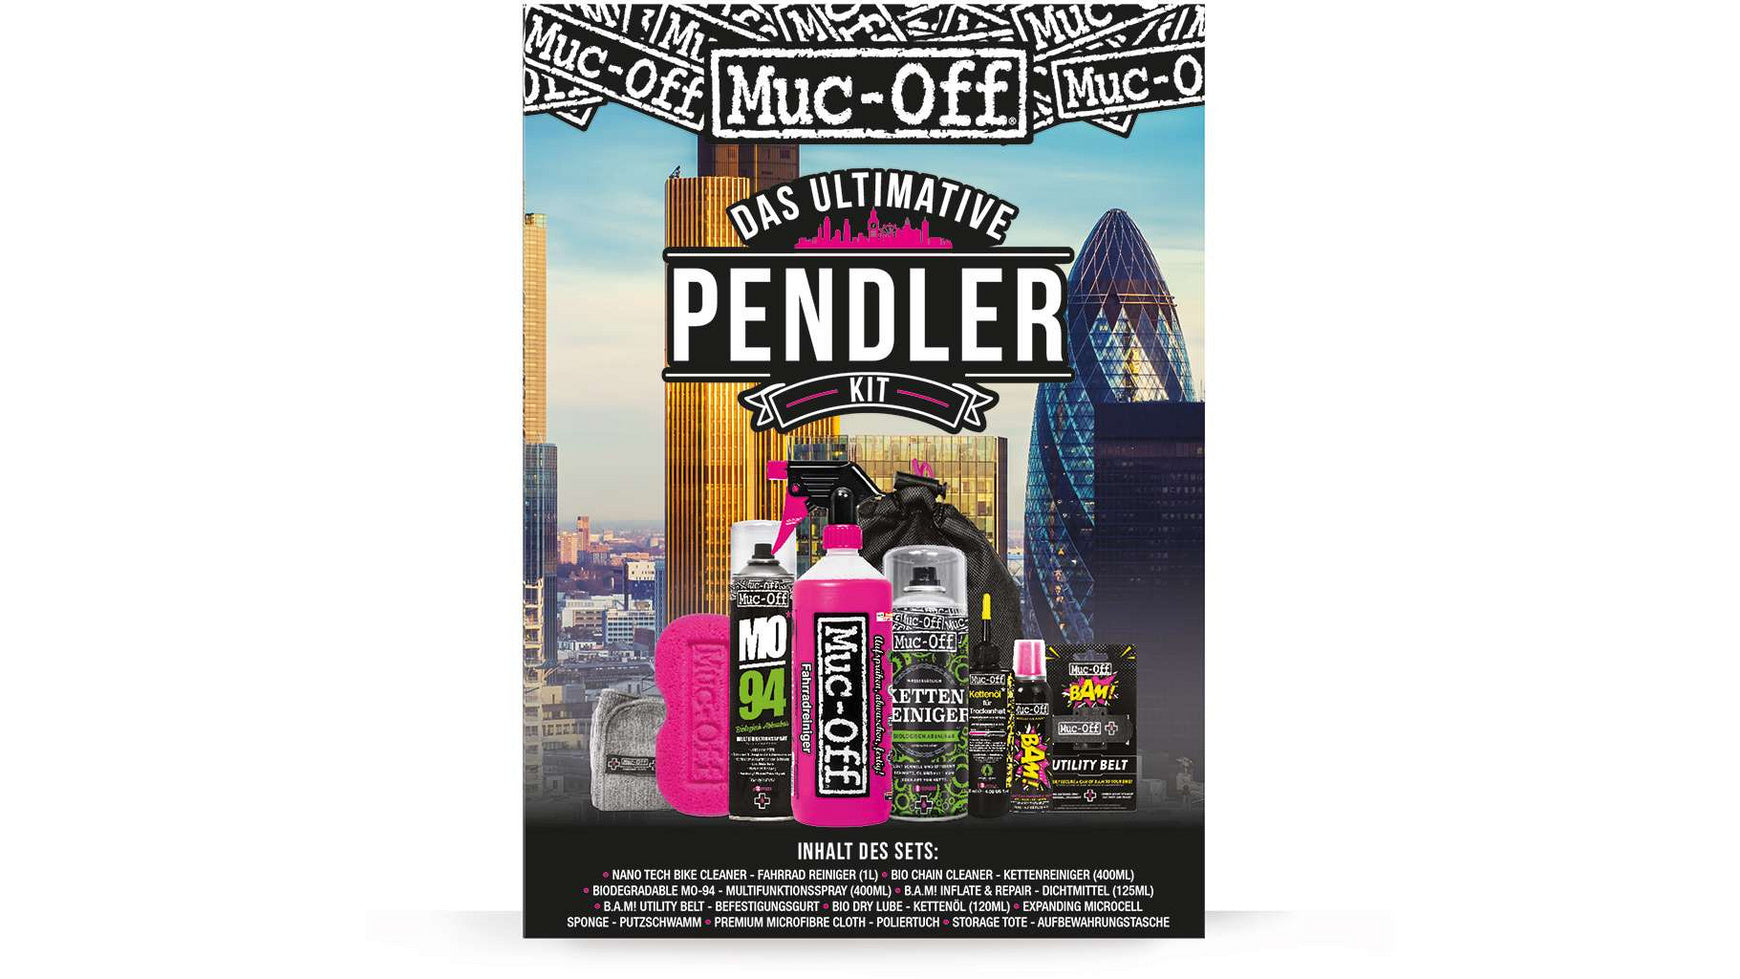 Muc-Off Pendler Kit Ultimate von Muc-Off